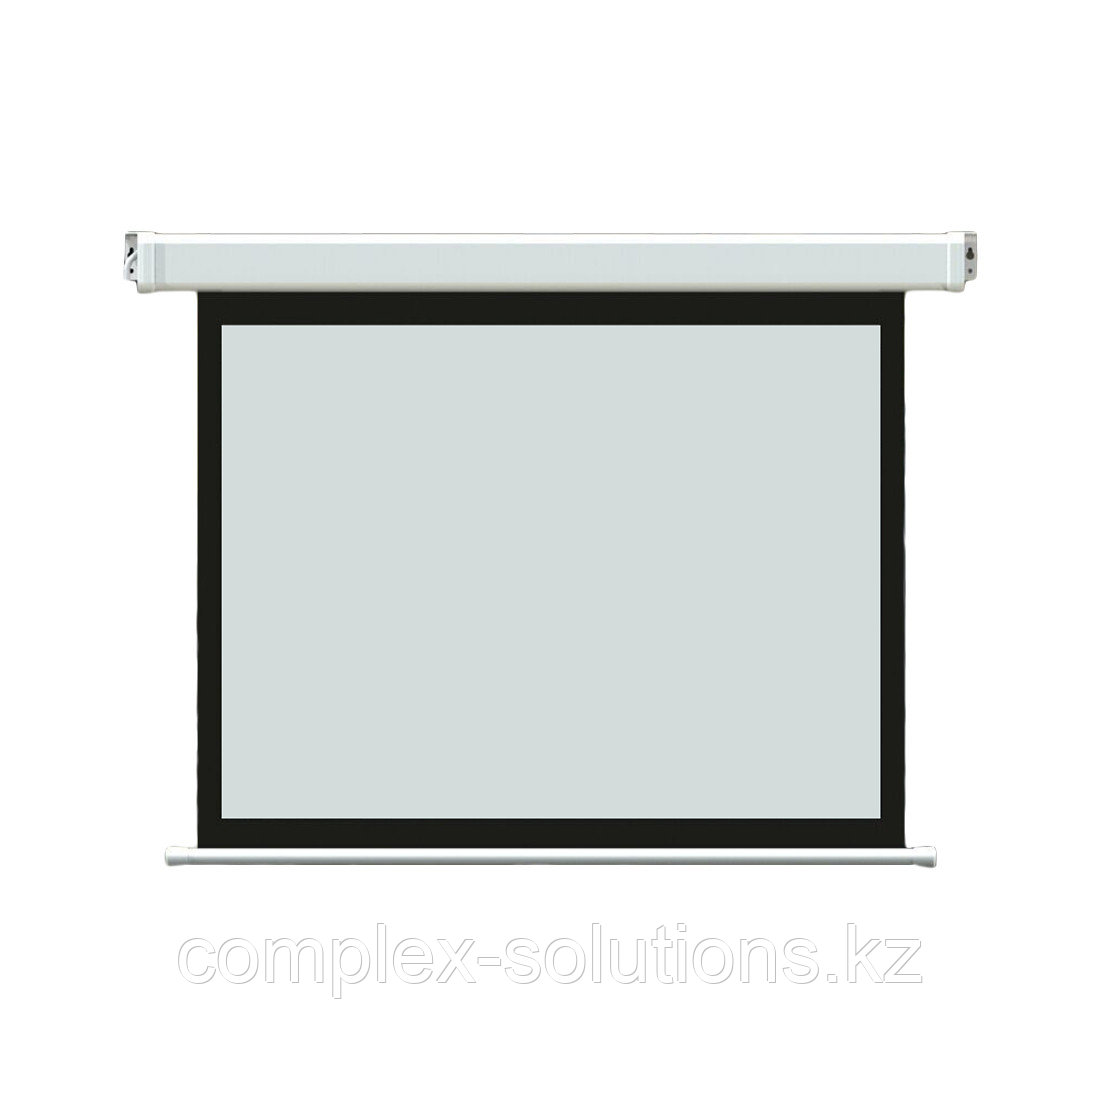 Экран моторизированный Deluxe DLS-E229х185 [90"х73"], Ø - 116", Раб. поверхность 221х125 см., 16:9